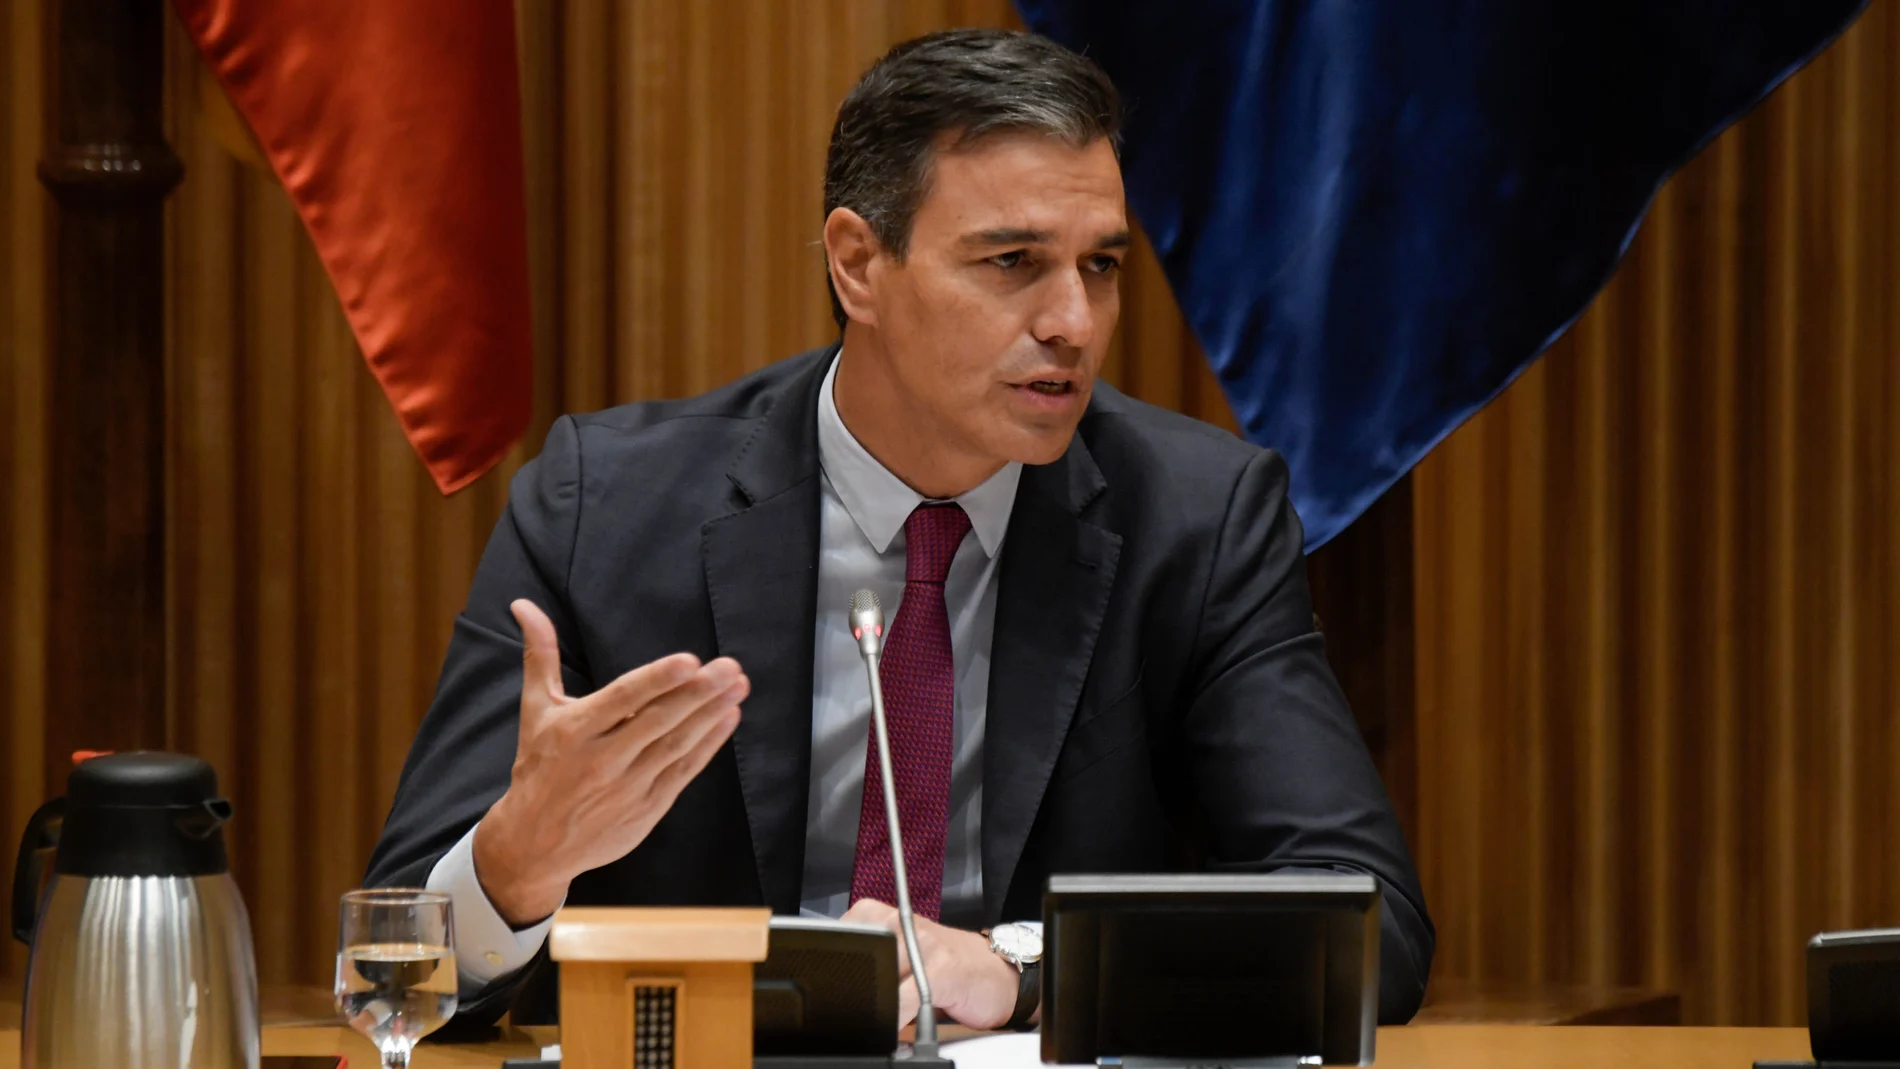 Pedro Sánchez interviene en la reunión interparlamentaria del Grupo Parlamentario Socialista en el Congreso de los Diputados